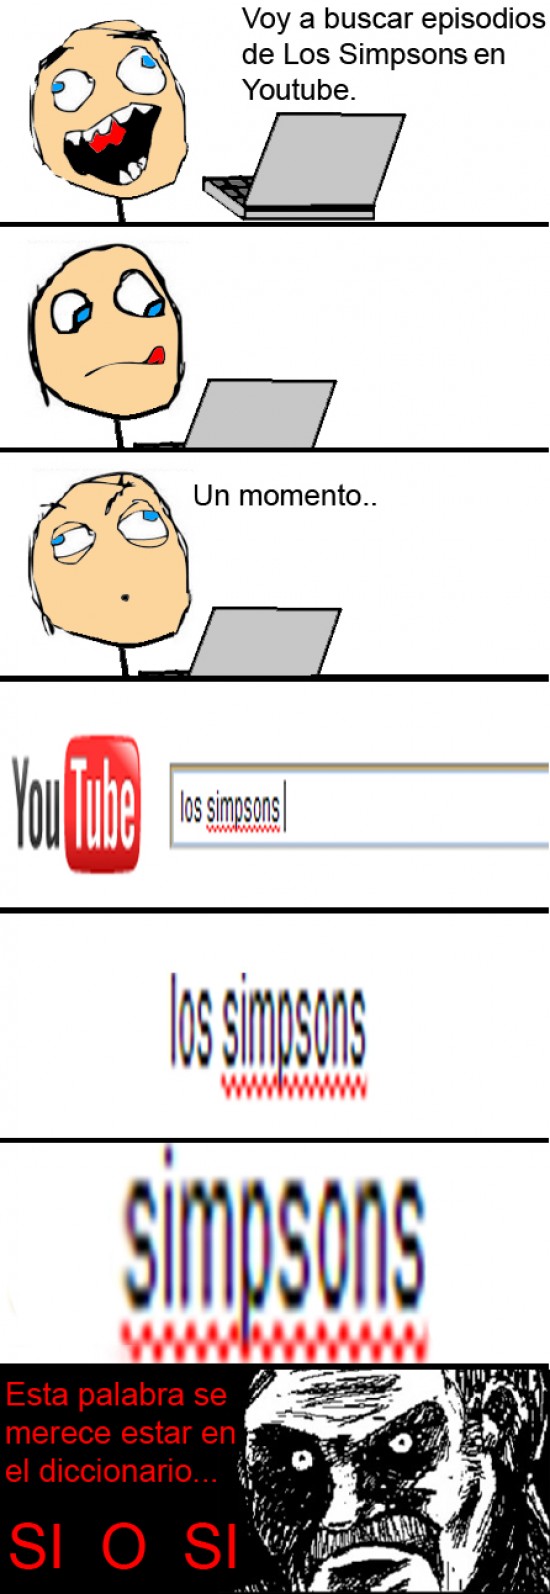 Los simpson,Odio,Youtube